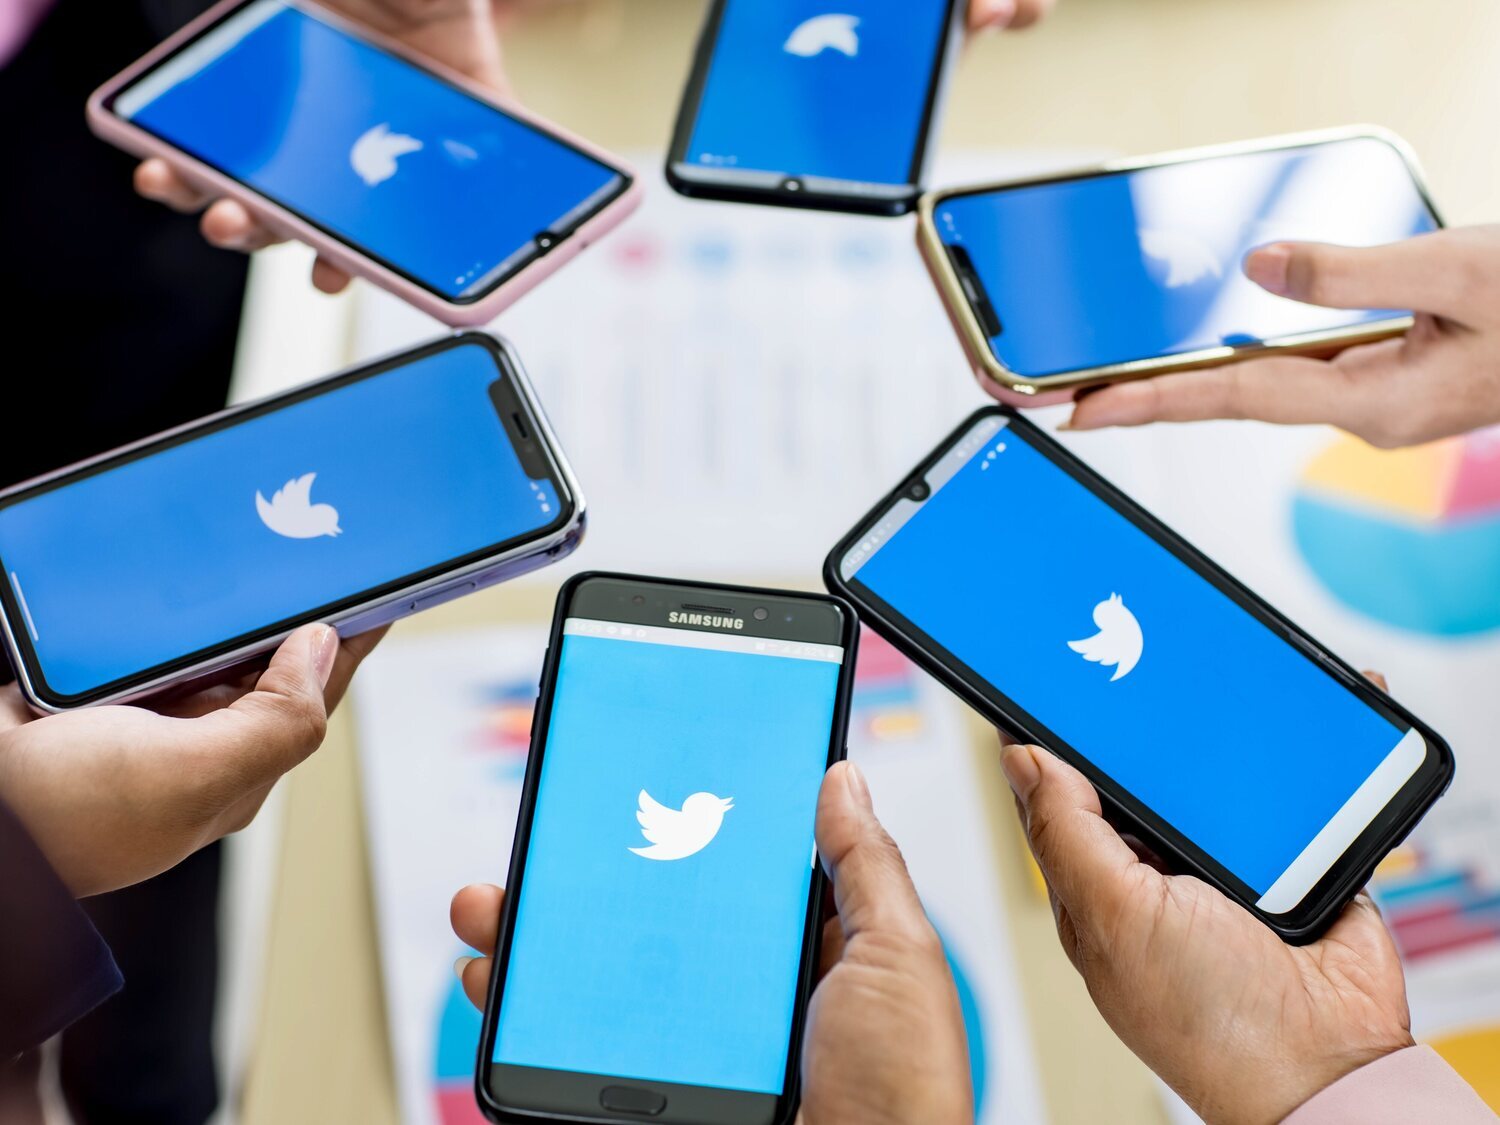 Twitter finalmente cobrará 8 euros mensuales por verificar la cuenta y otros servicios extra